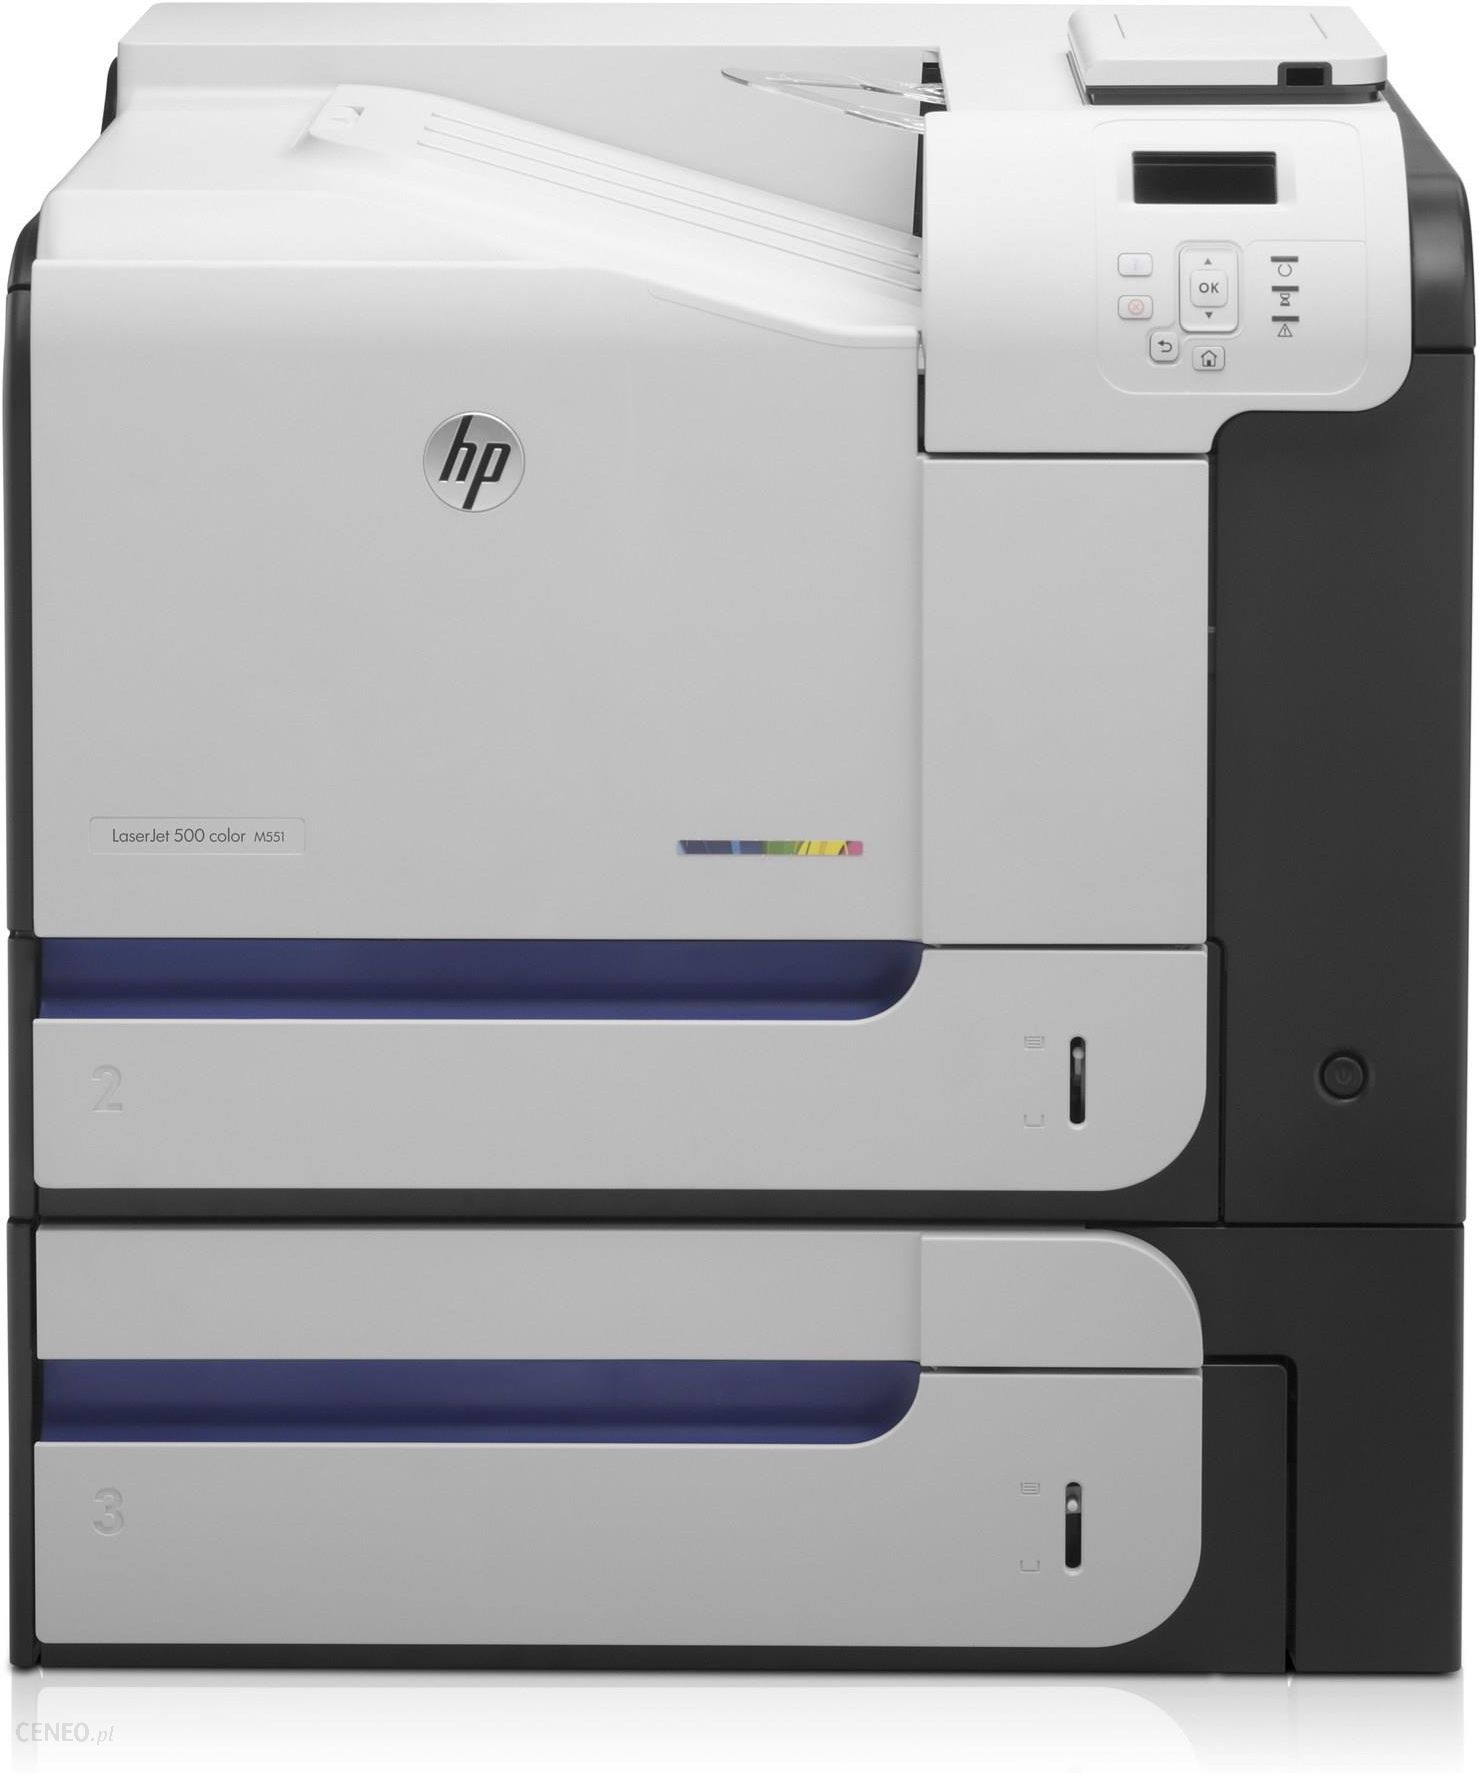 Toner för HP LaserJet 500 color M551xh